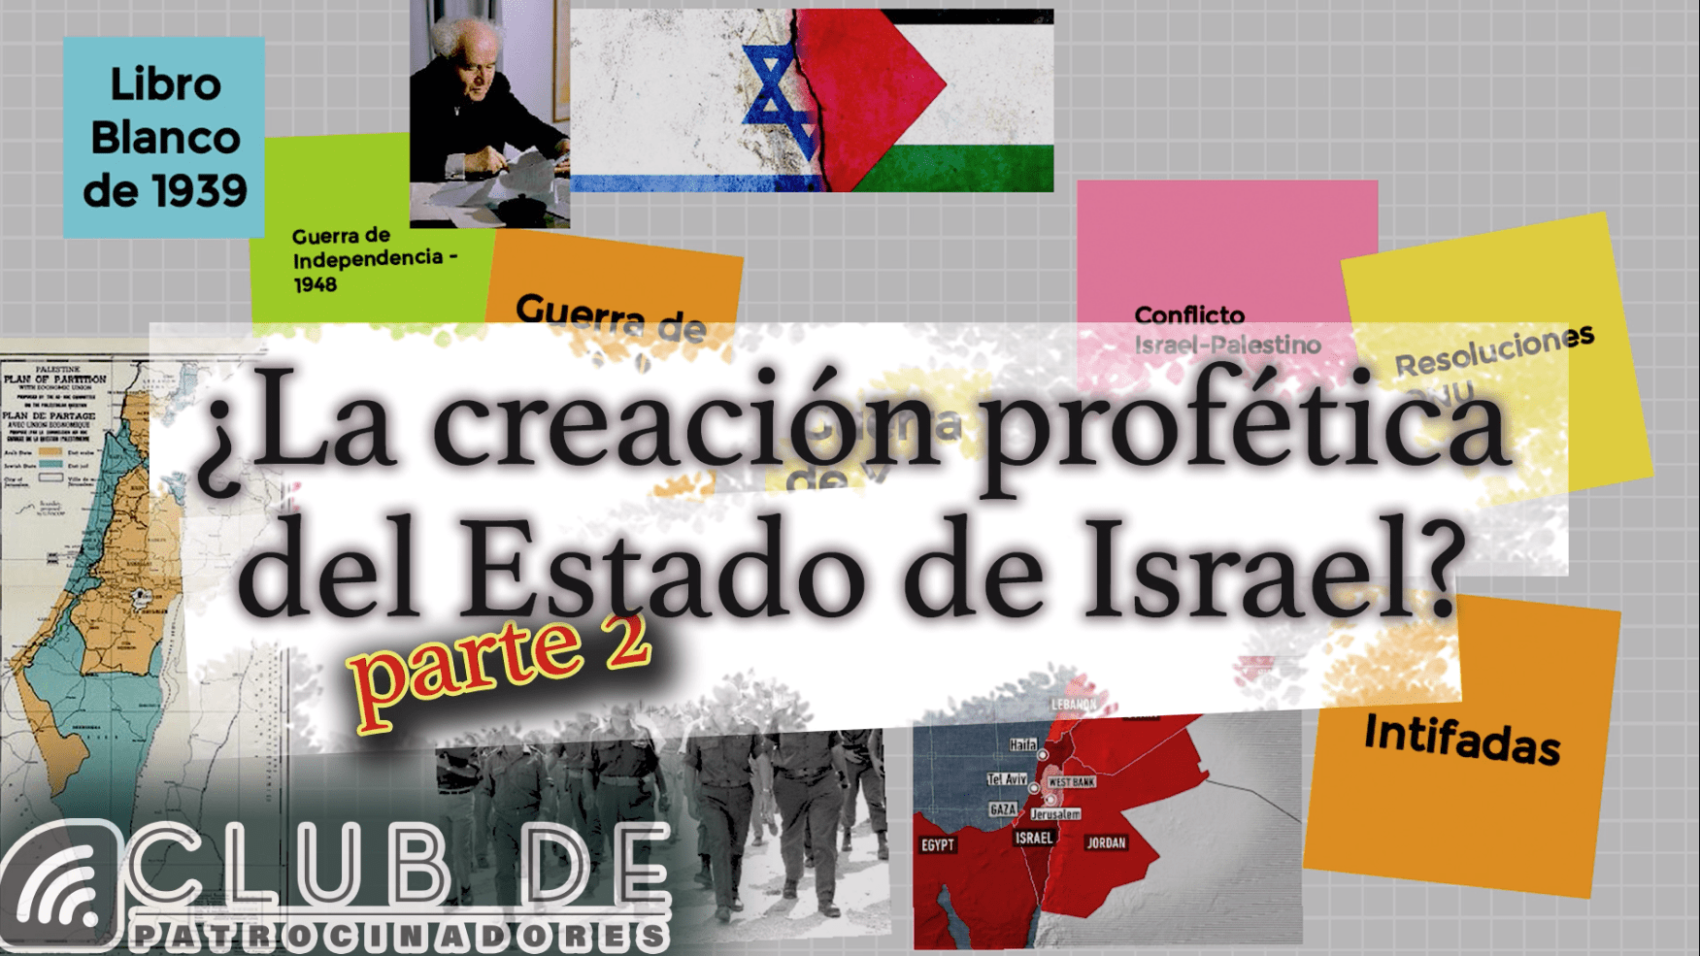 Creacion profetica del Estado de Israel 2